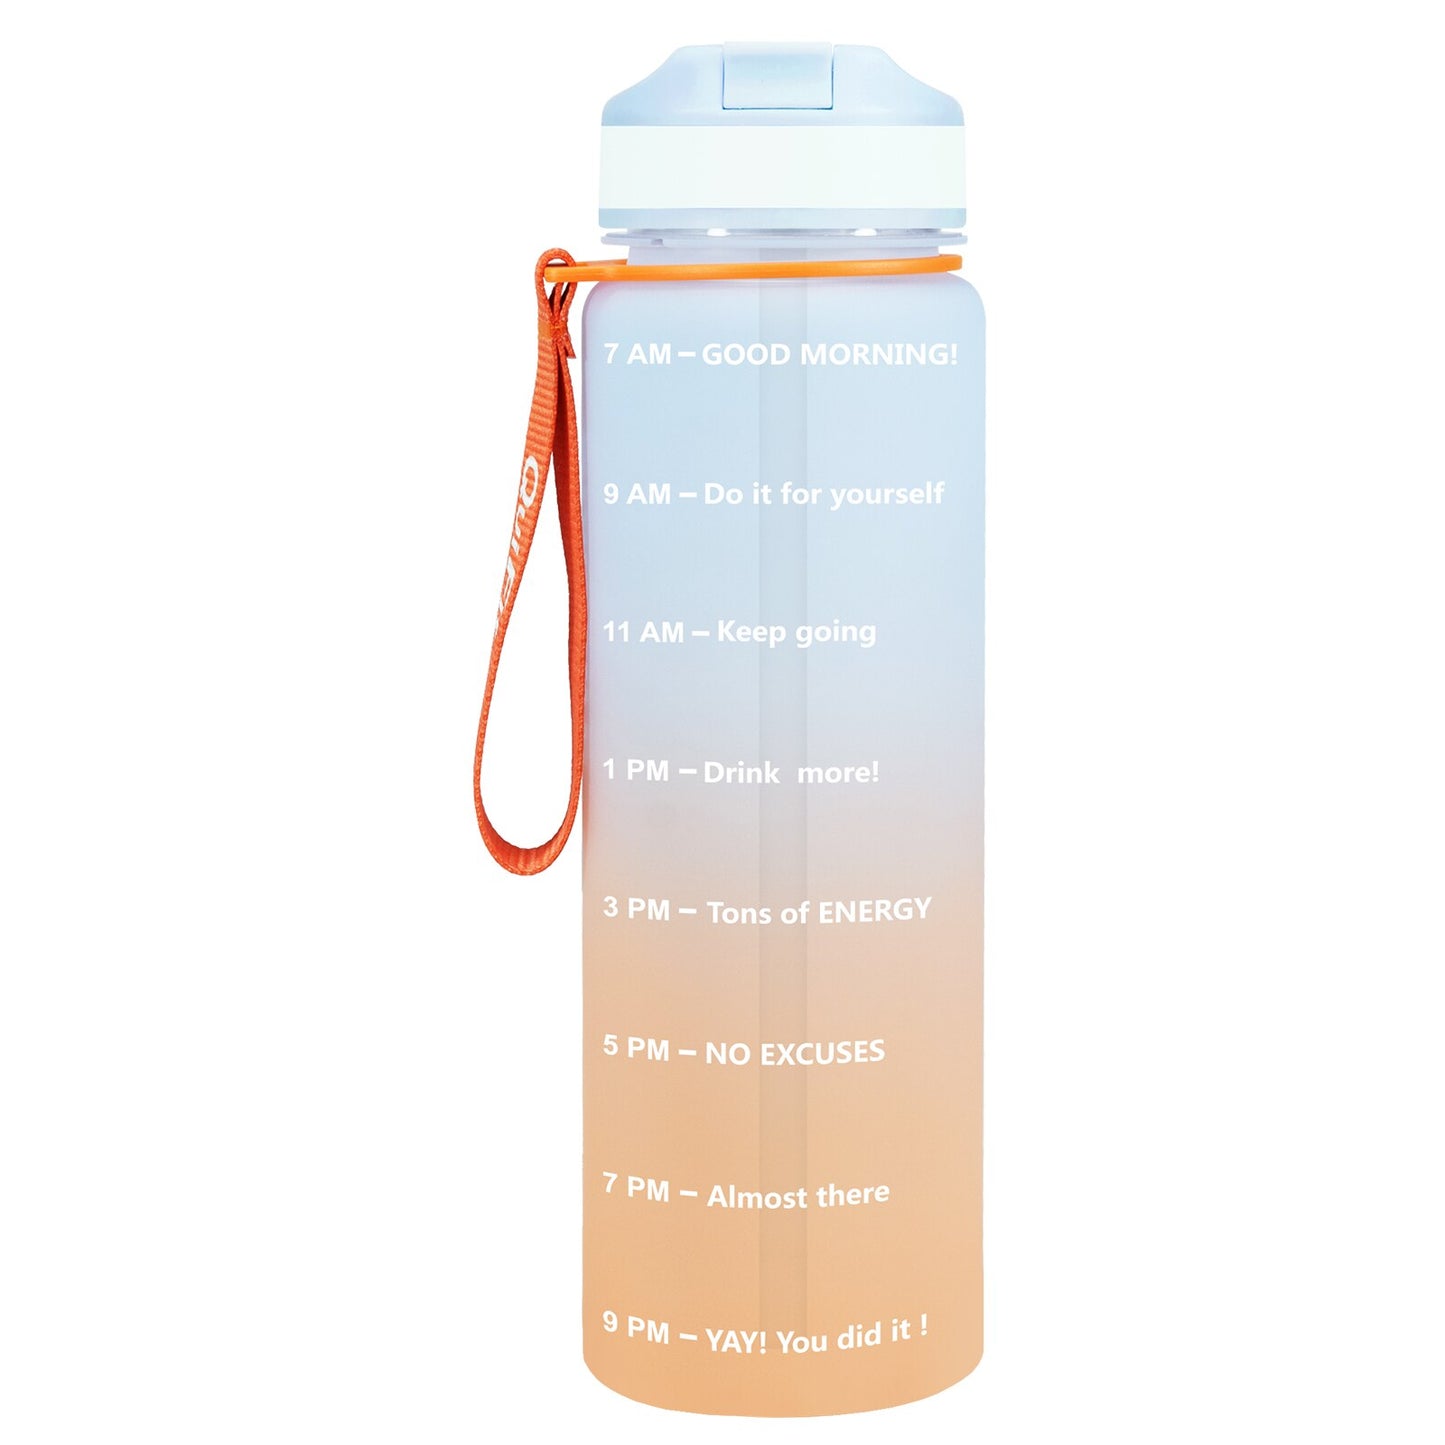 Eine orange-blaue Sporttrinkflasche mit einer Zeitmarkierungen sowie motivierenden Spruechen für verschiedene Tageszeiten. Die Flasche hat eine orange Trageschlaufe und einen Deckel mit einem aufklappbaren Trinkverschluss.